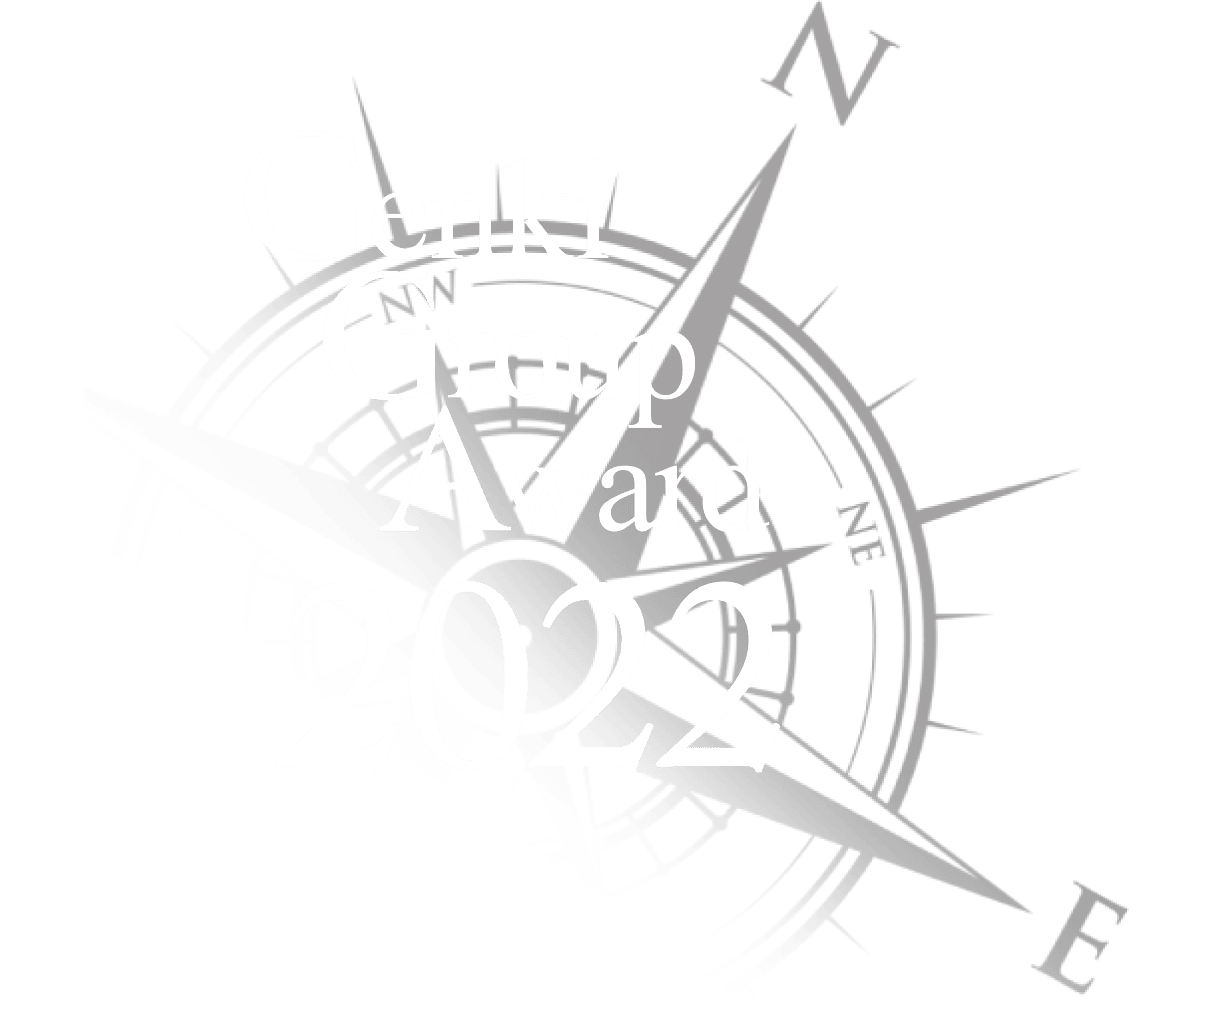 Genki Group Award 2022